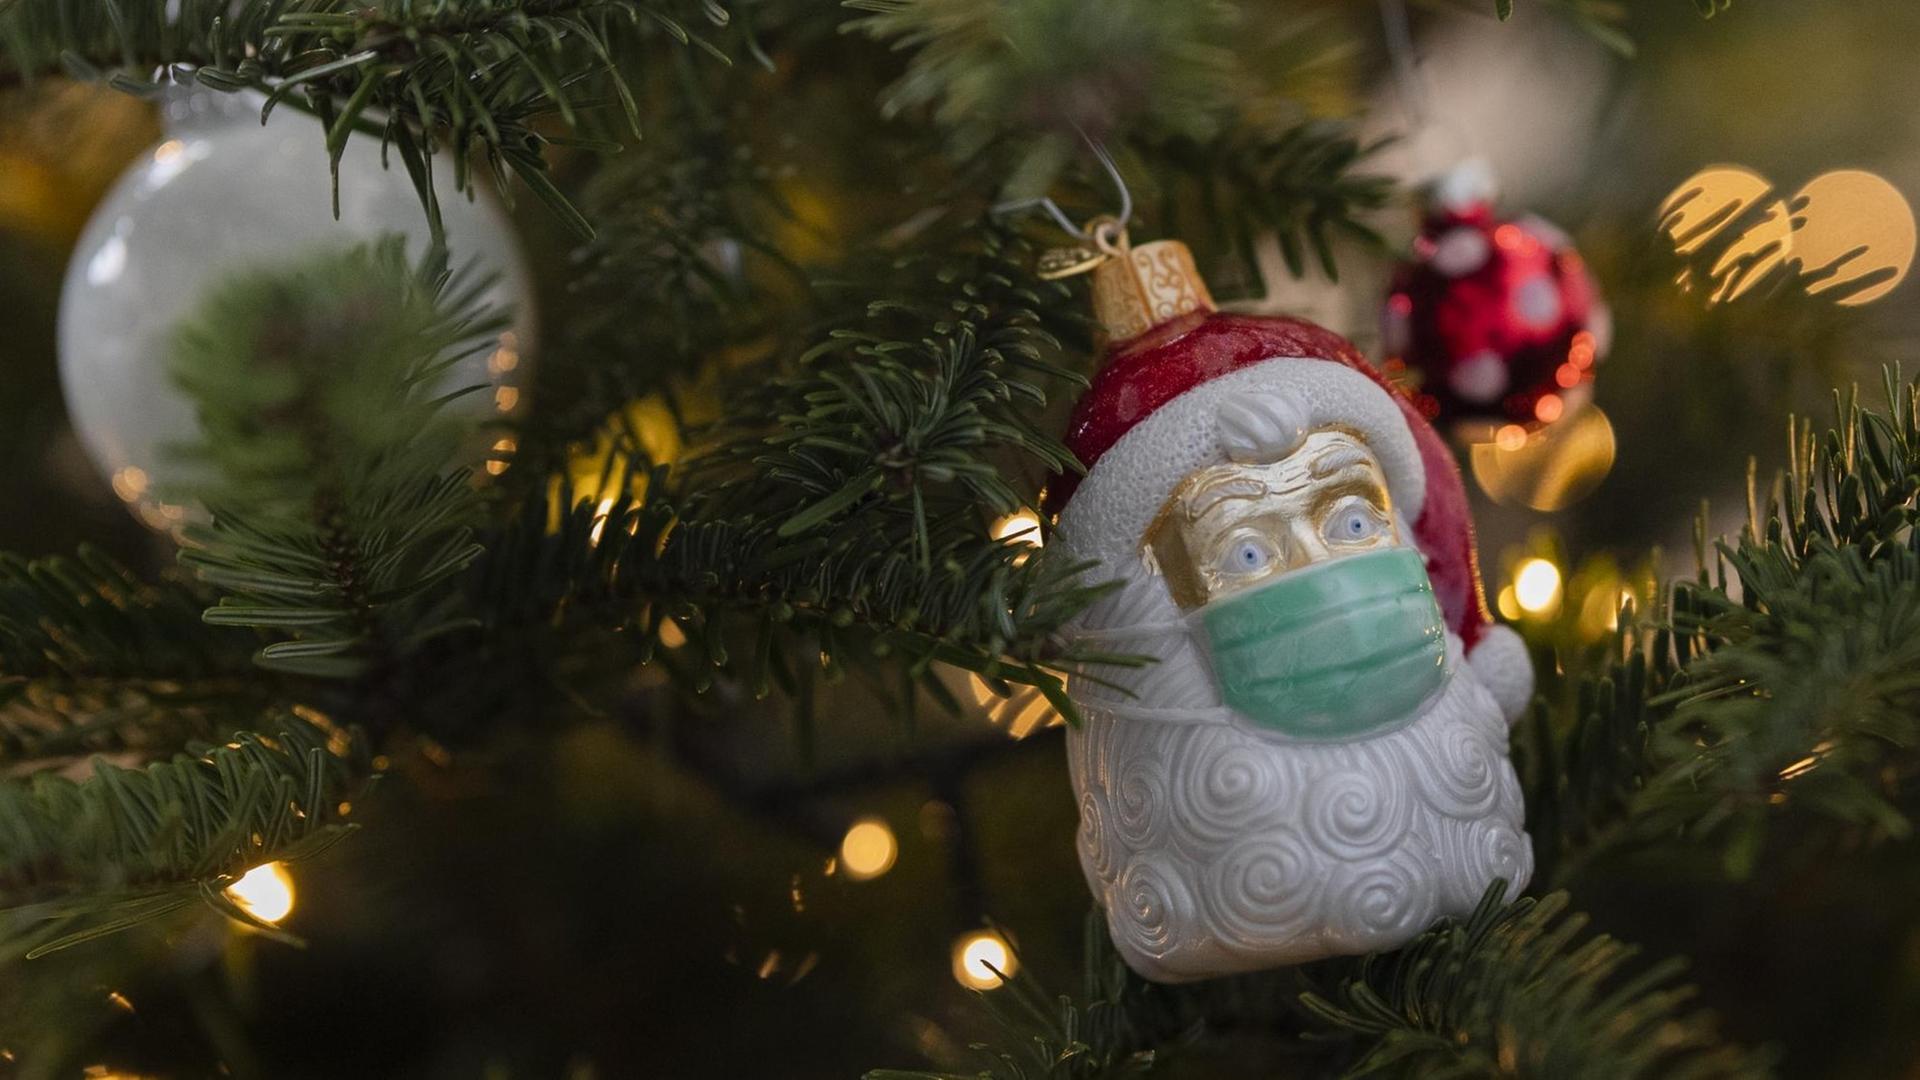 An einem Weihnachtsbaum hängt Weihnachtsschmuck in Form eines Weihnachtsmannes, der eine Maske trägt.